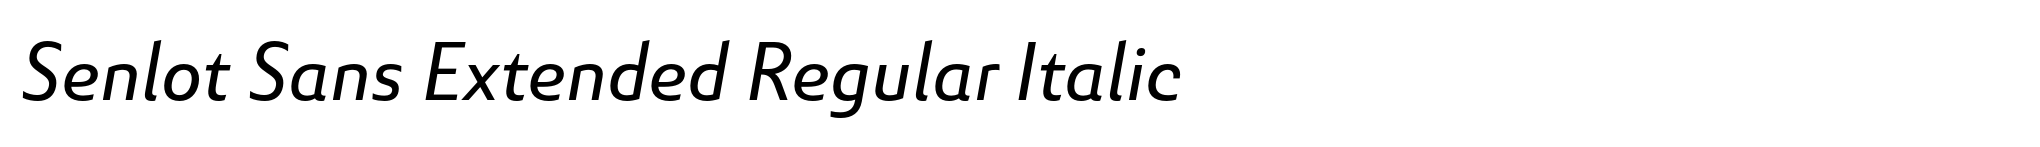 Senlot Sans Extended Regular Italic image